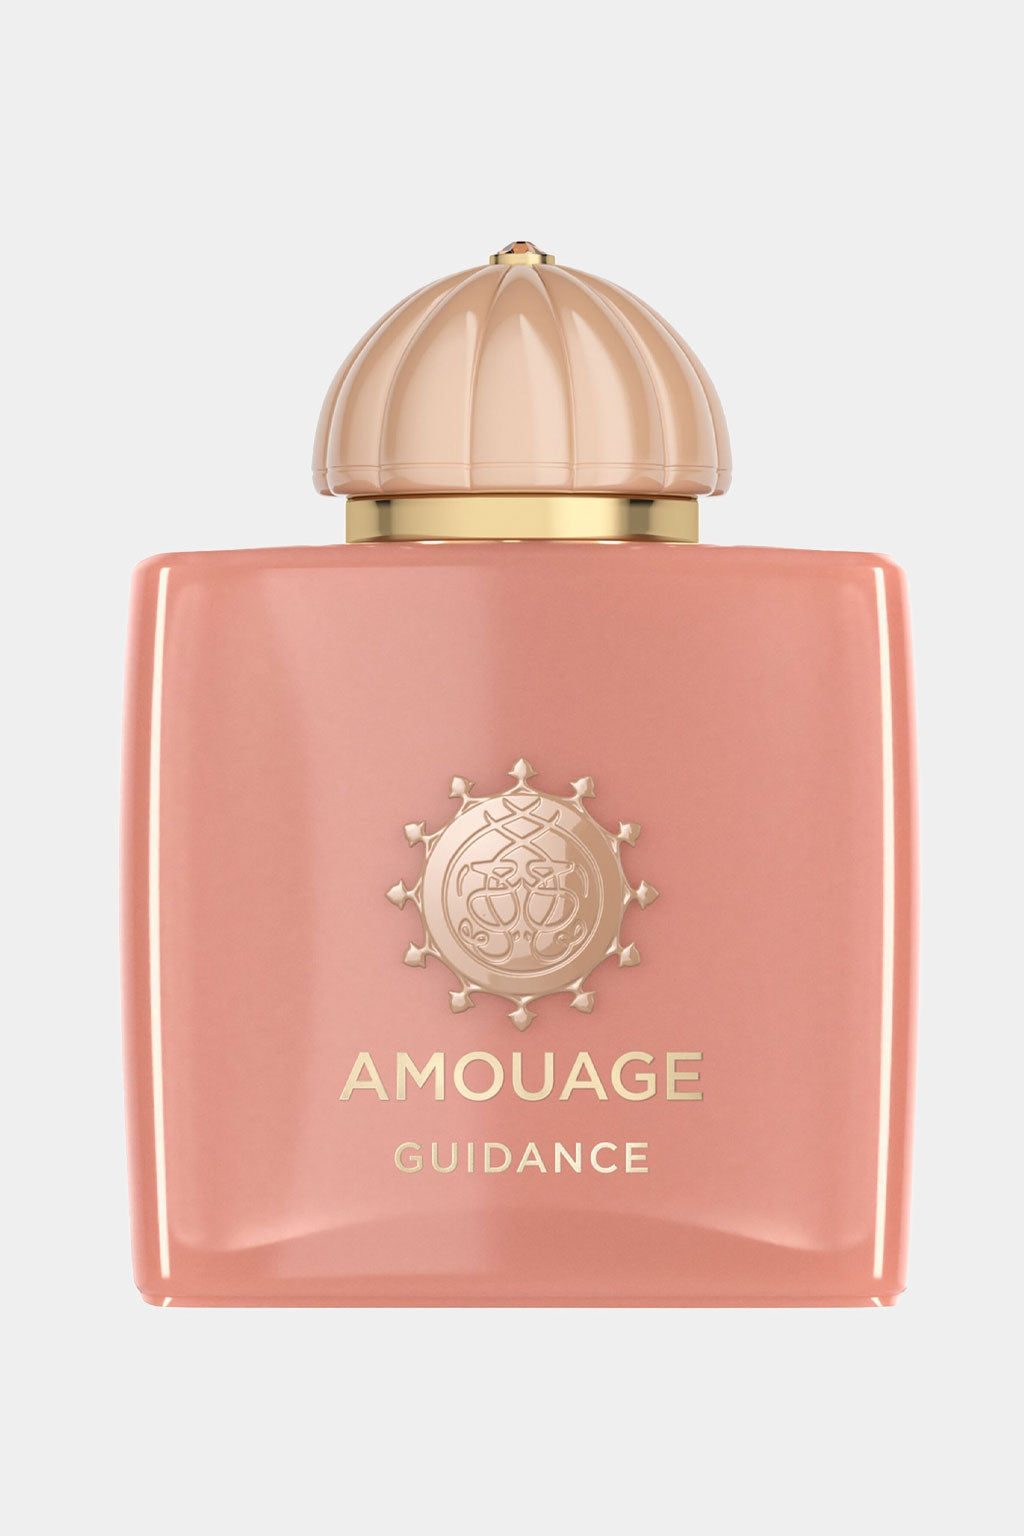 Amouage - Guidance Eau de Parfum